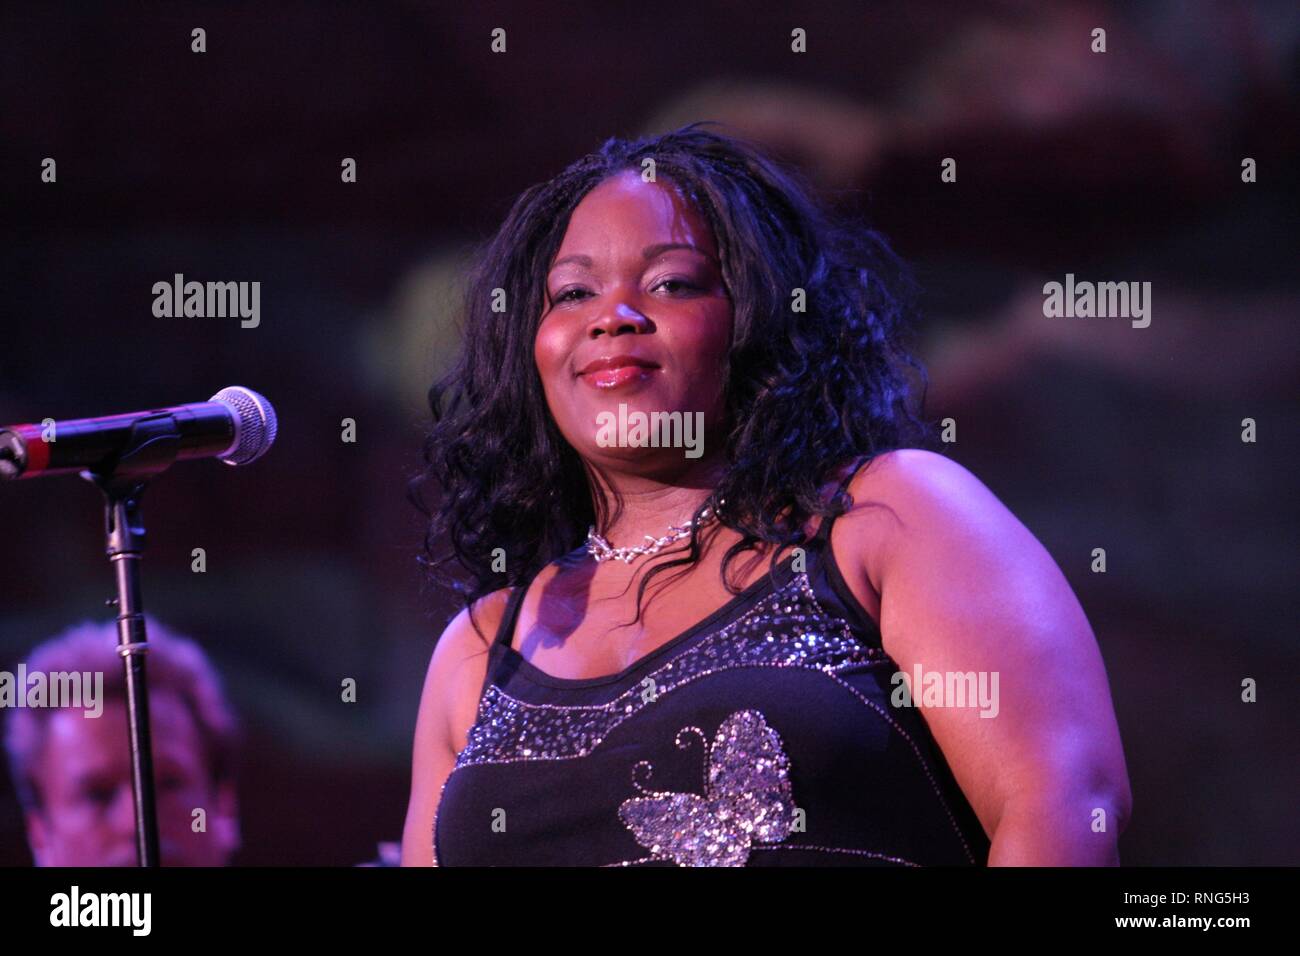 Chanteuse de blues Shemekia Copeland est montré chanter sur scène lors d'un "live" en concert. Banque D'Images